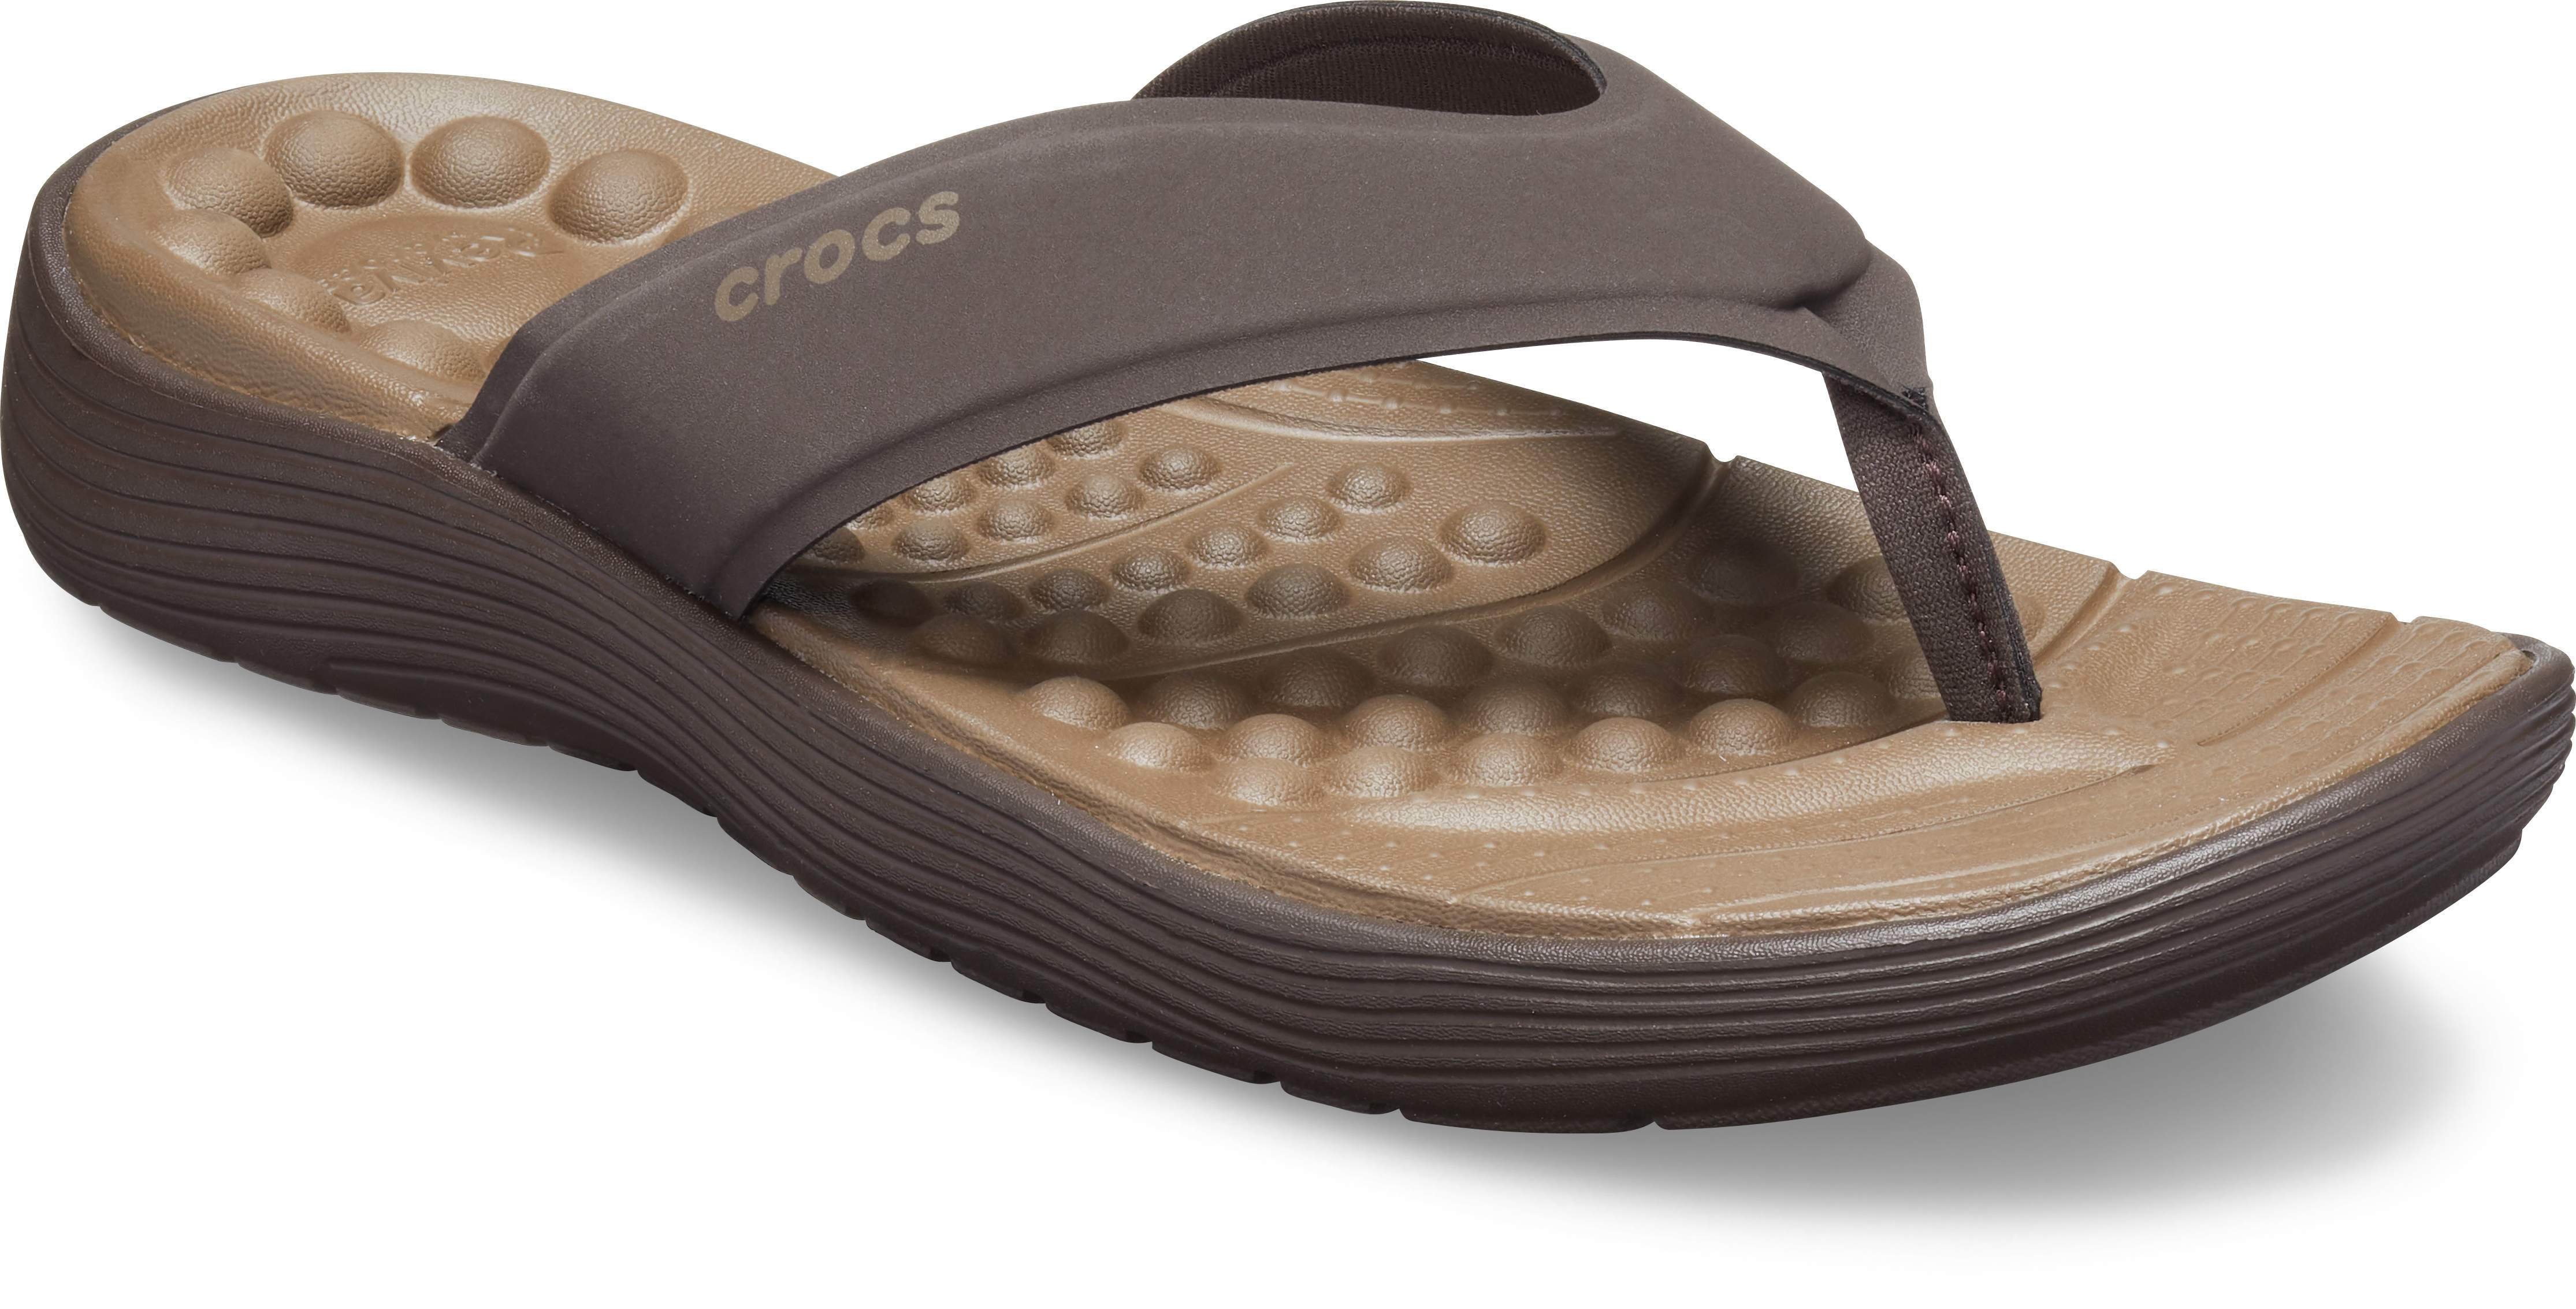 crocs rivera flip flops